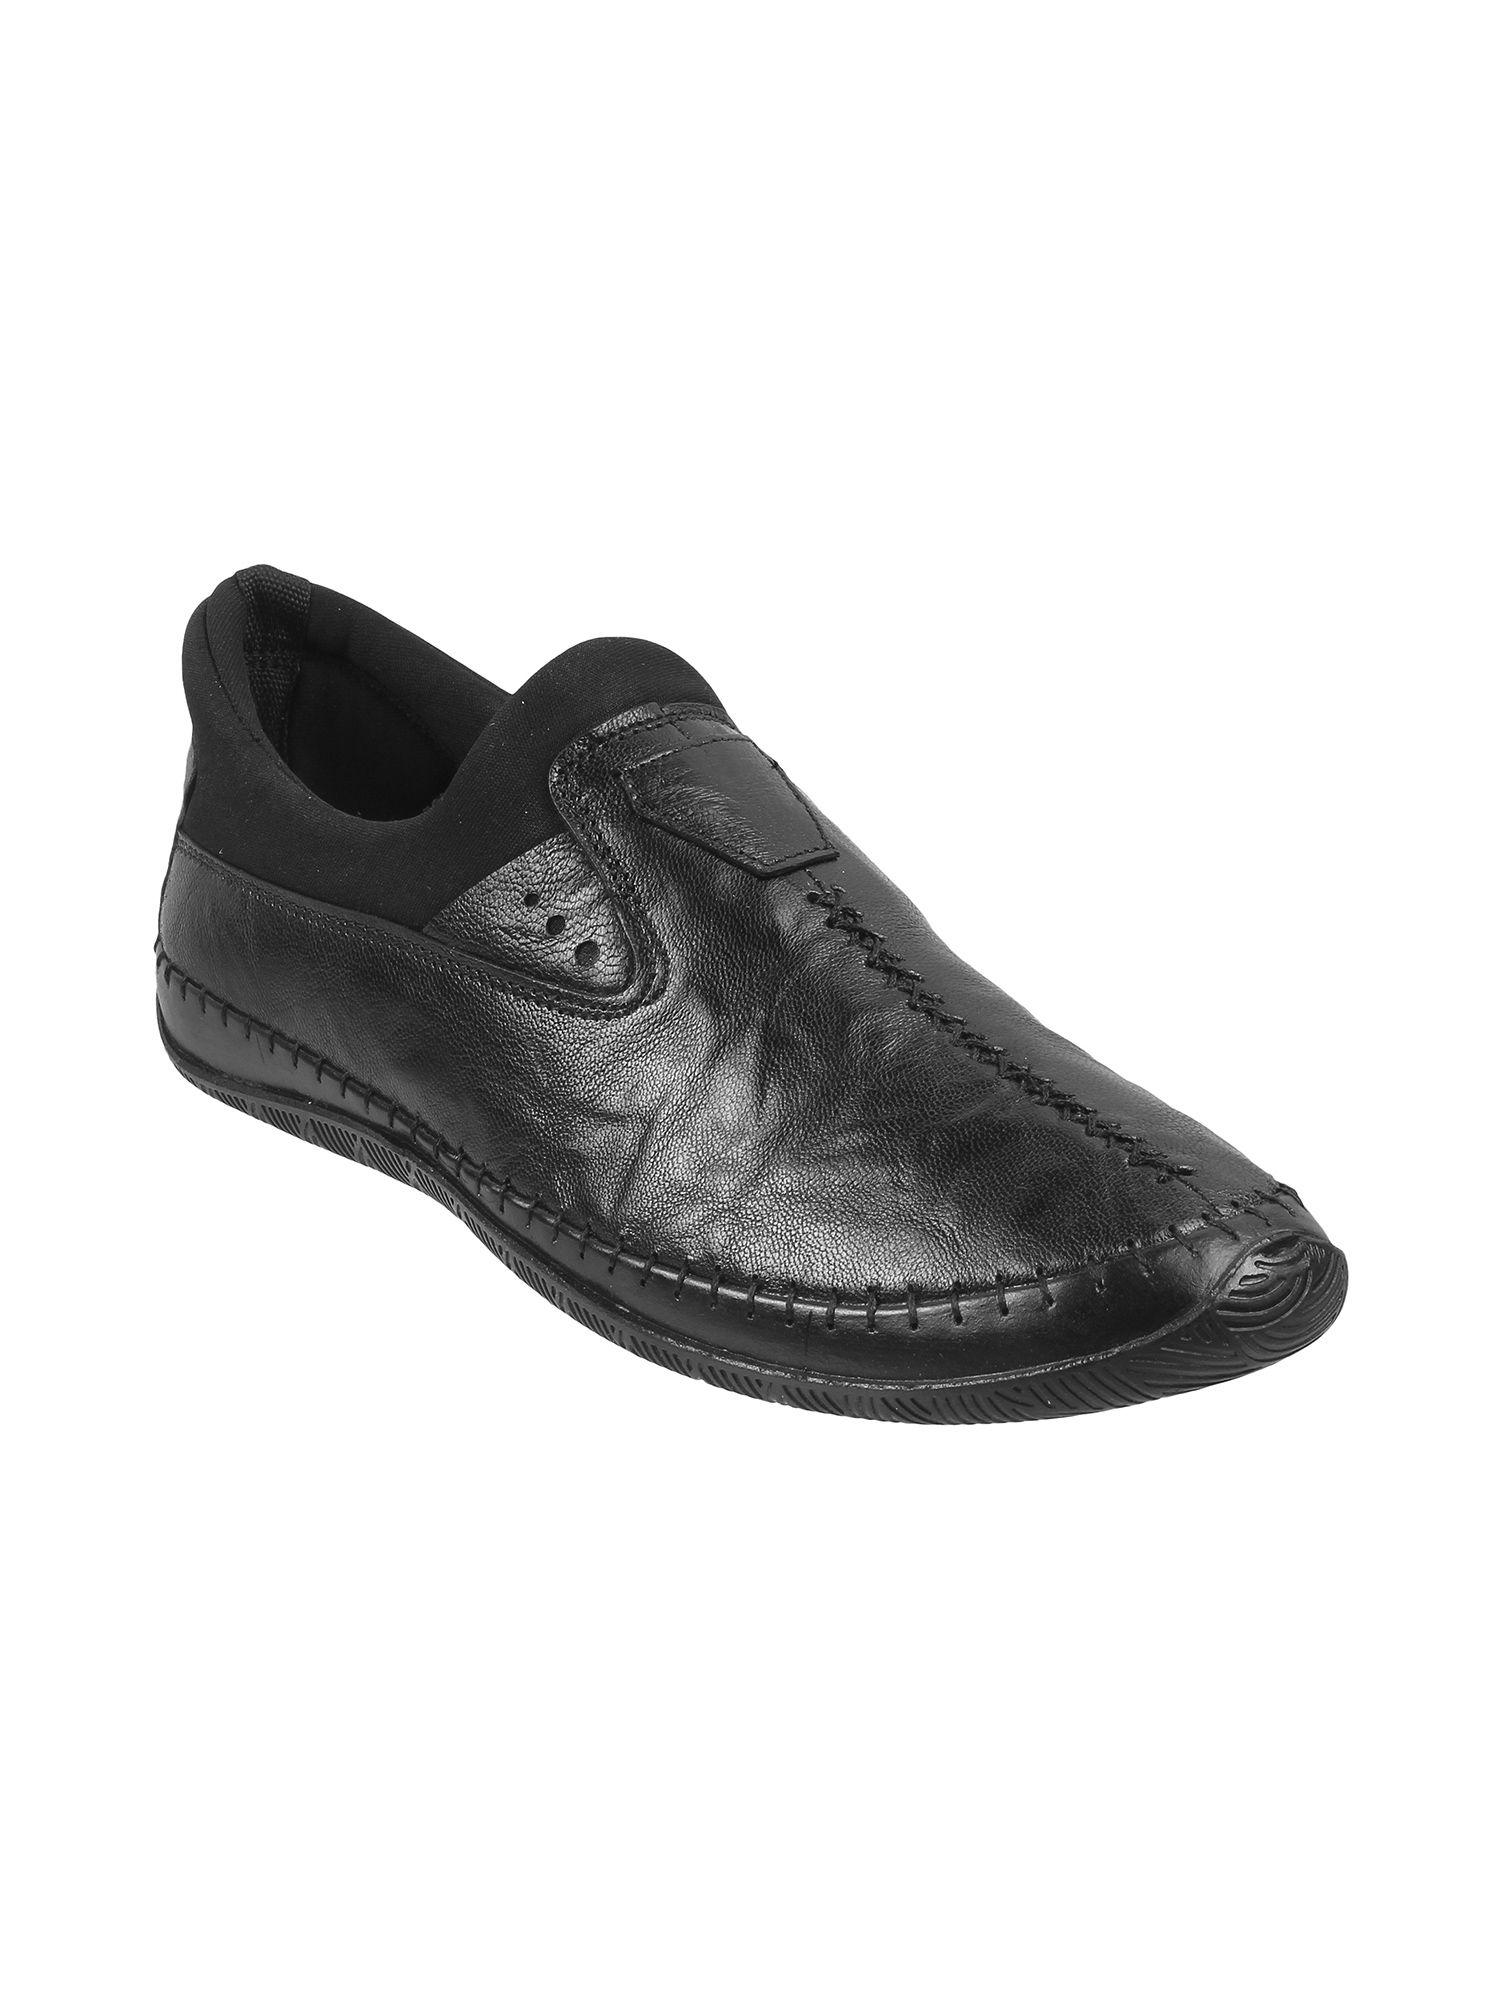 men leather black slip on loafers